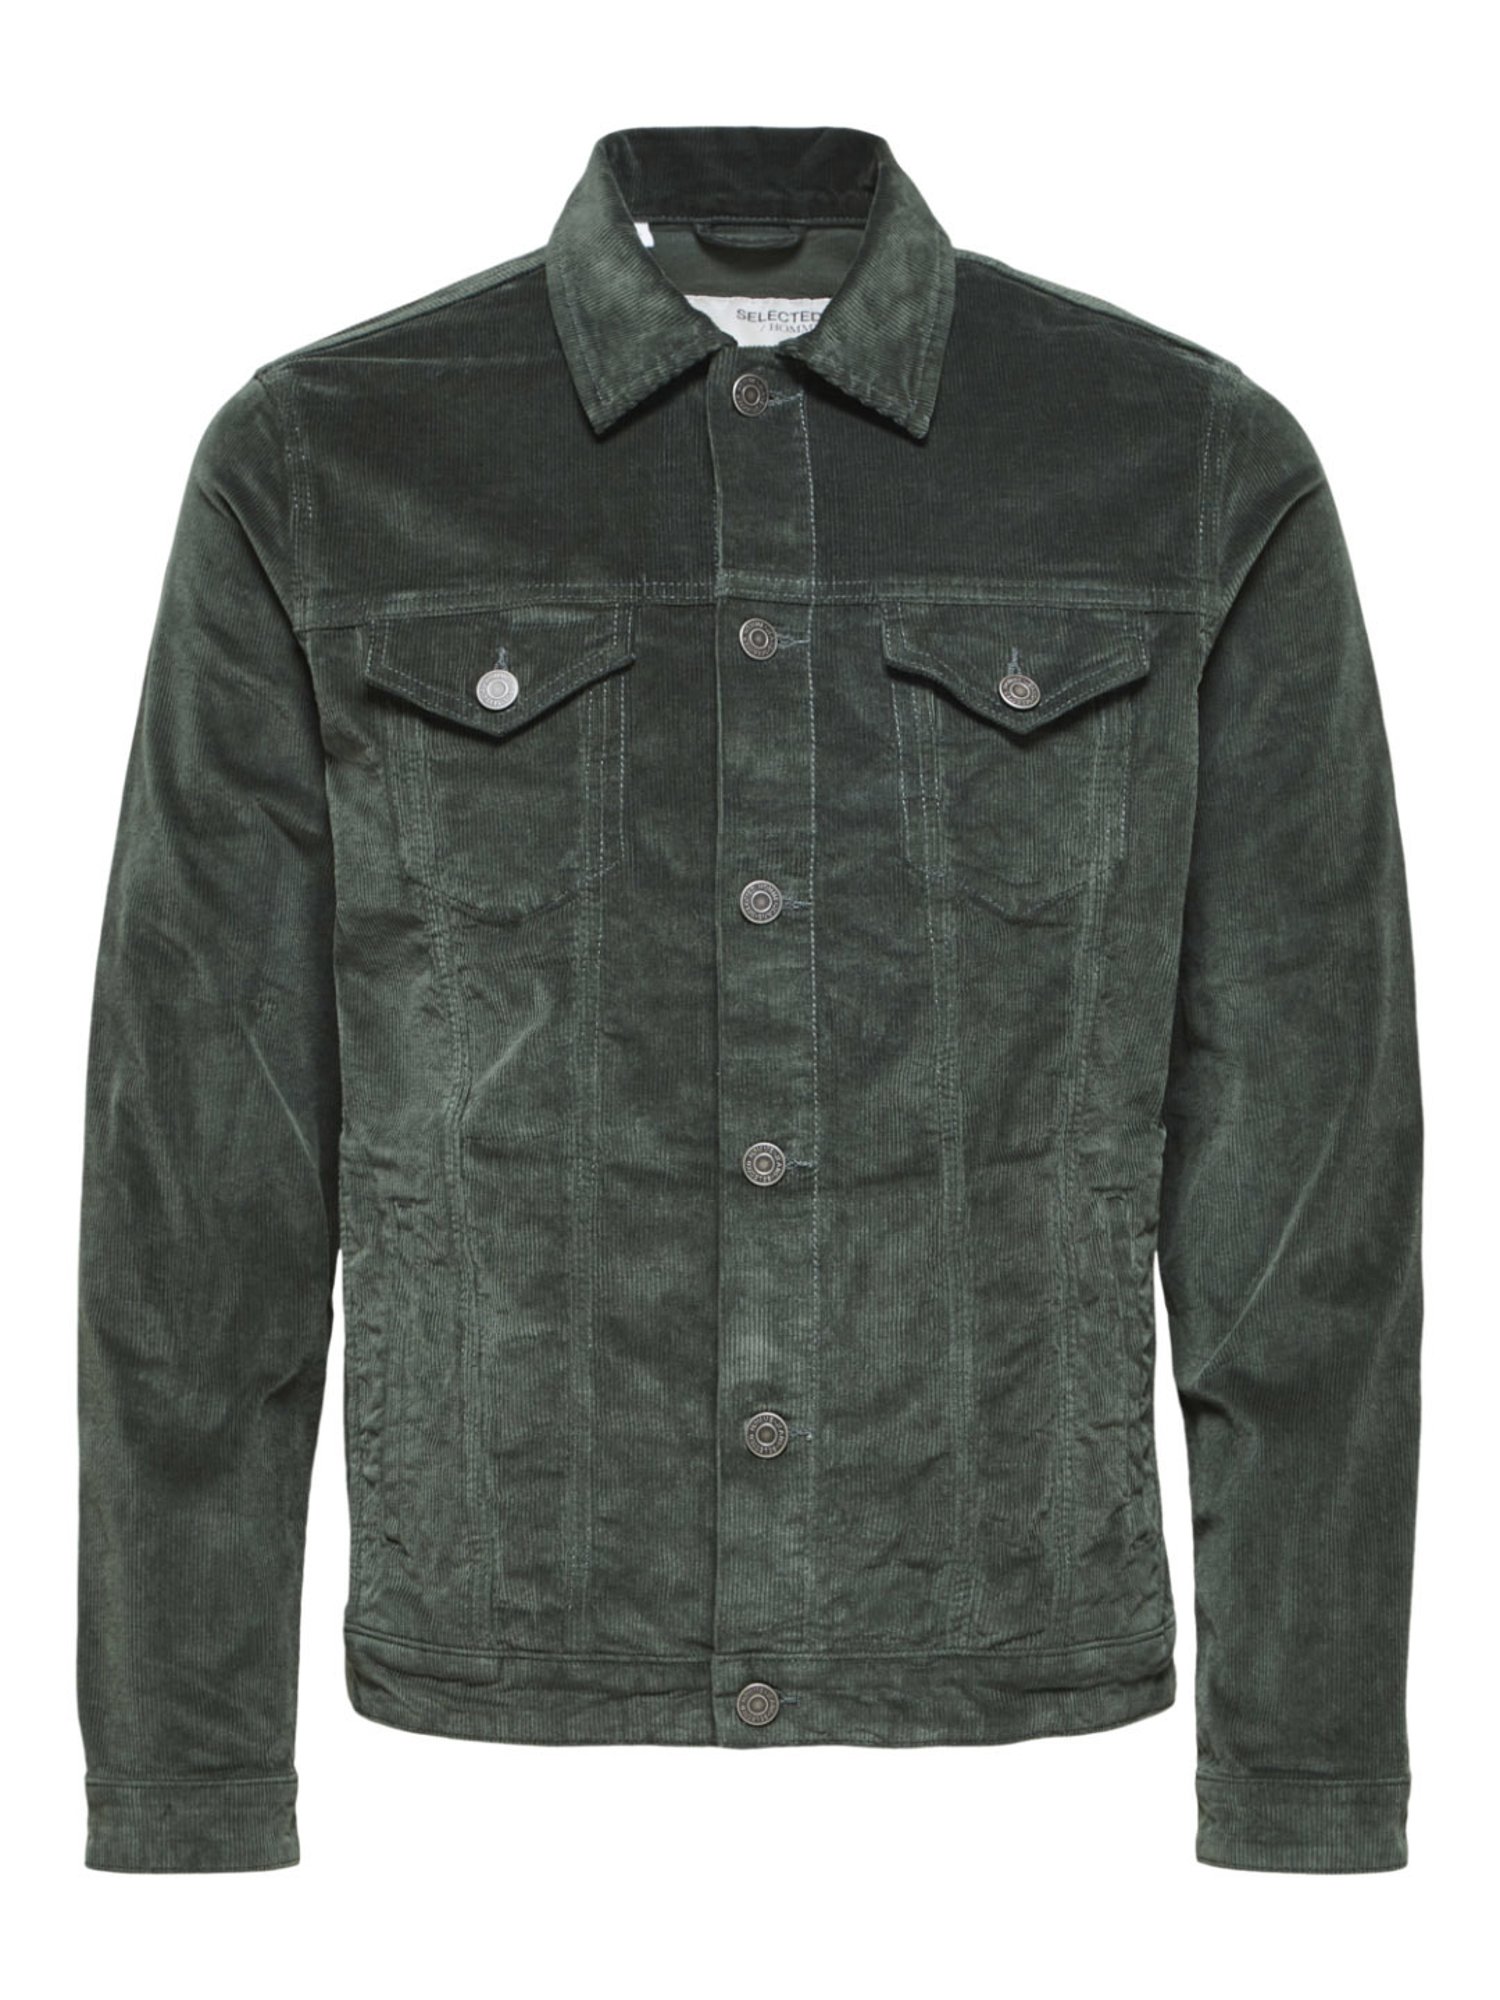 Buy SELECTED HOMME Dark Green Zip Up Bomber Jacket online